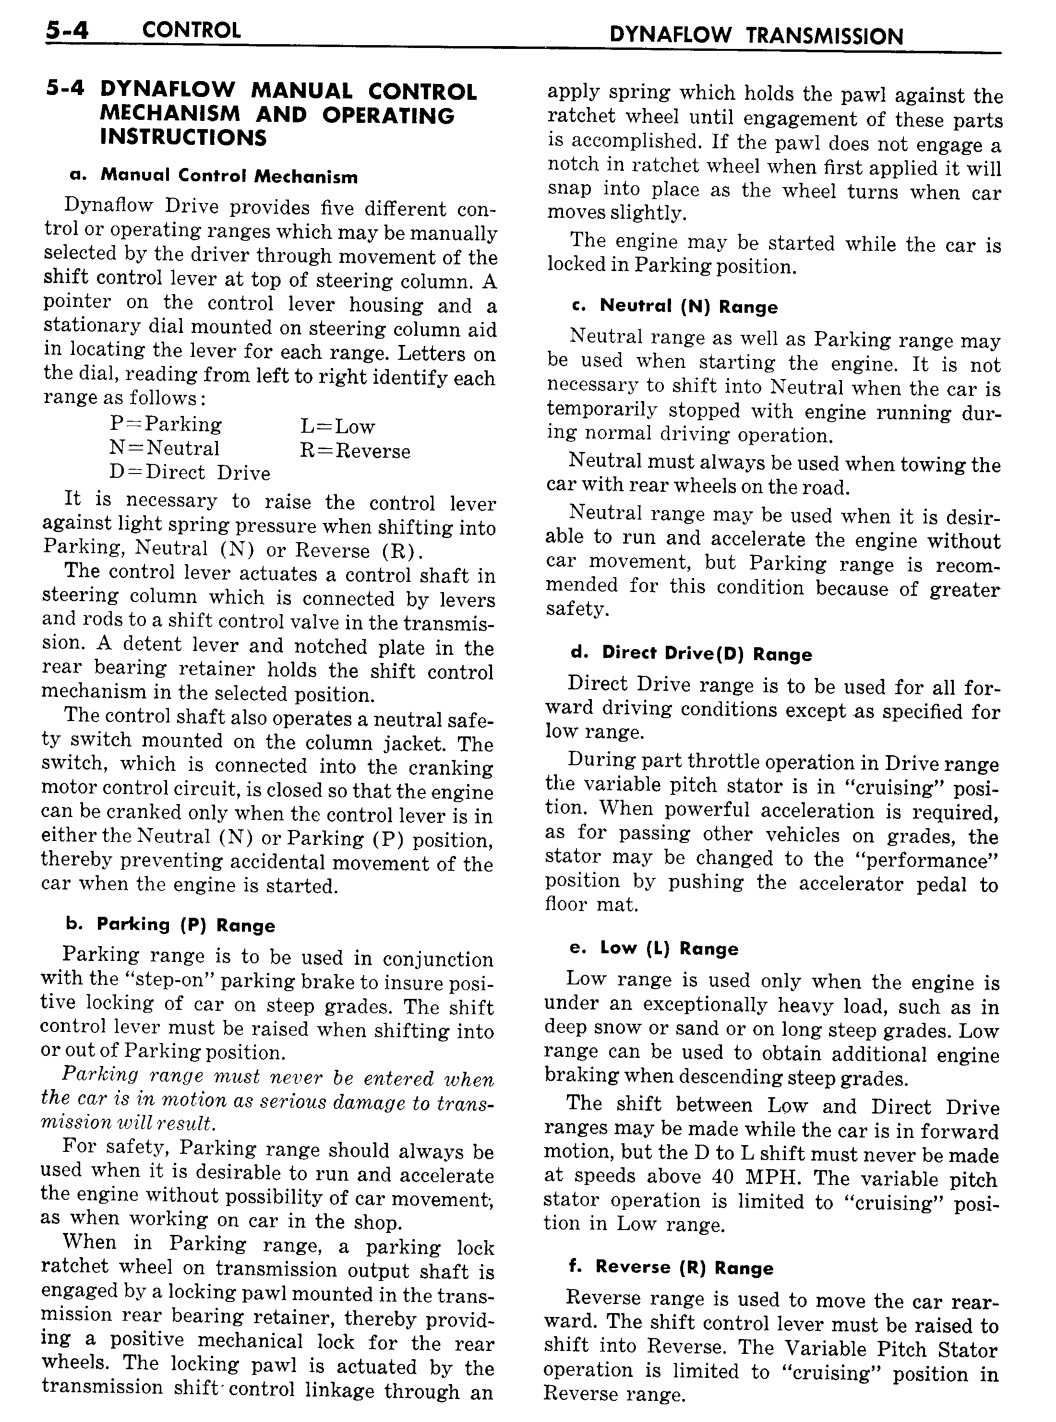 n_06 1957 Buick Shop Manual - Dynaflow-004-004.jpg